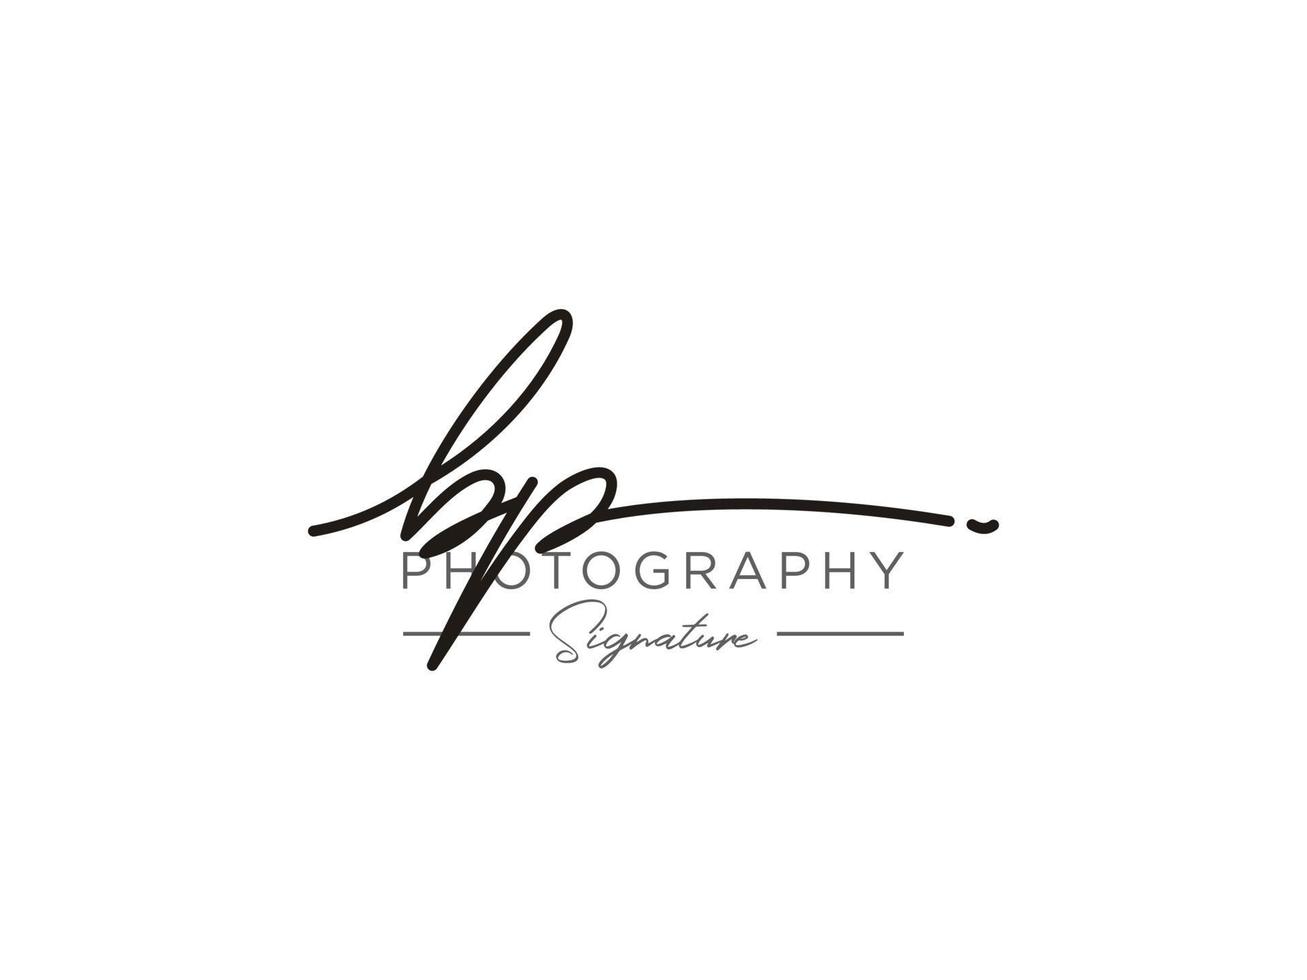 lettre bp signature logo template vecteur